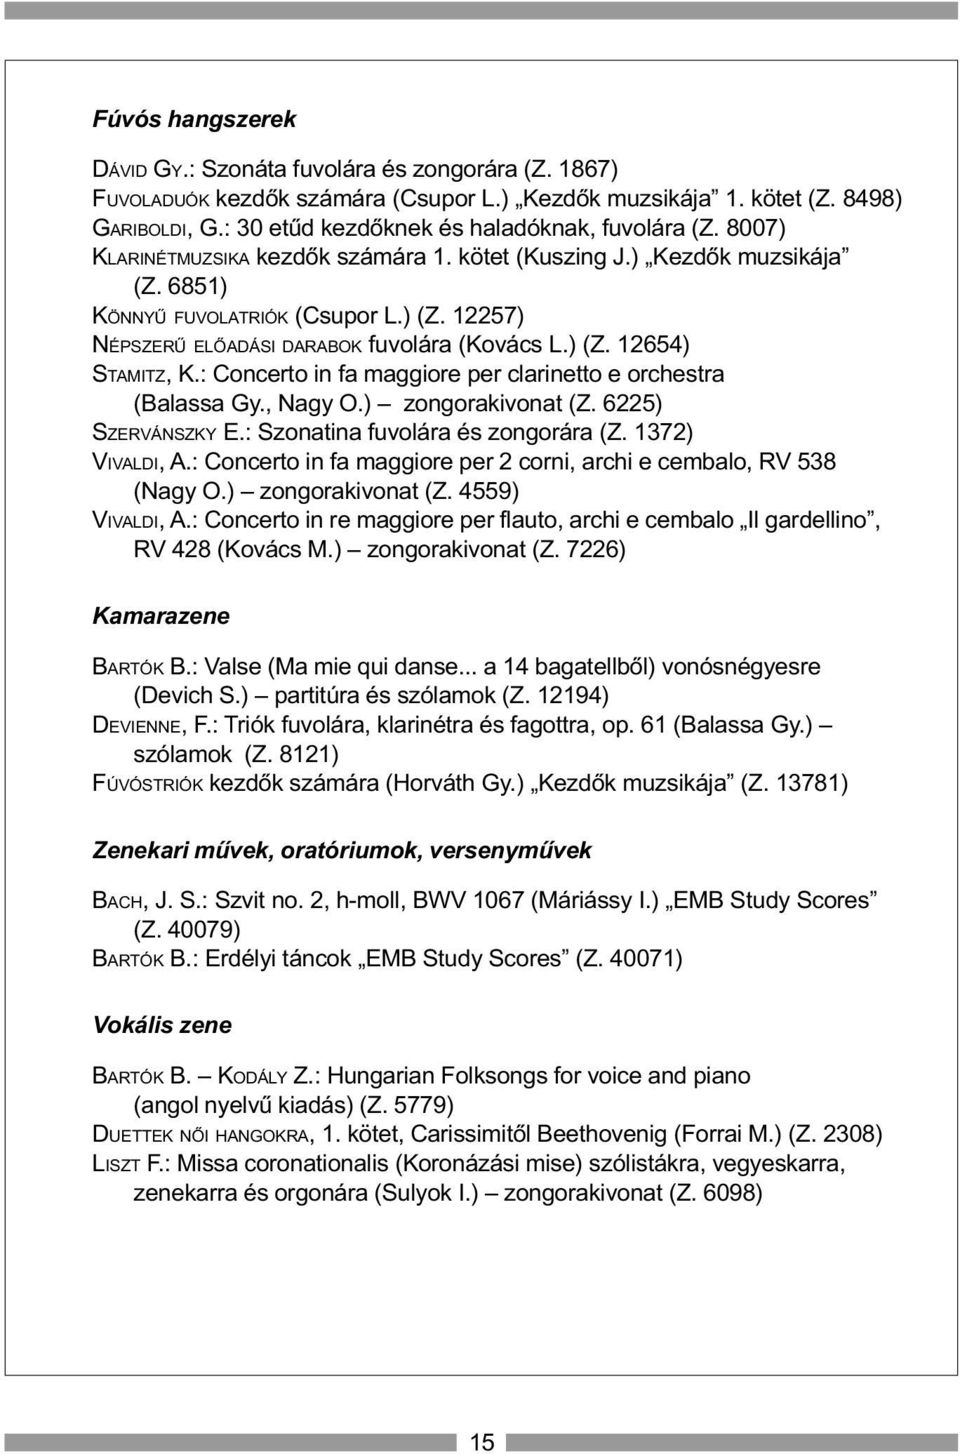 12257) NÉPSZERÛ ELÕADÁSI DARABOK fuvolára (Kovács L.) (Z. 12654) STAMITZ, K.: Concerto in fa maggiore per clarinetto e orchestra (Balassa Gy., Nagy O.) zongorakivonat (Z. 6225) SZERVÁNSZKY E.